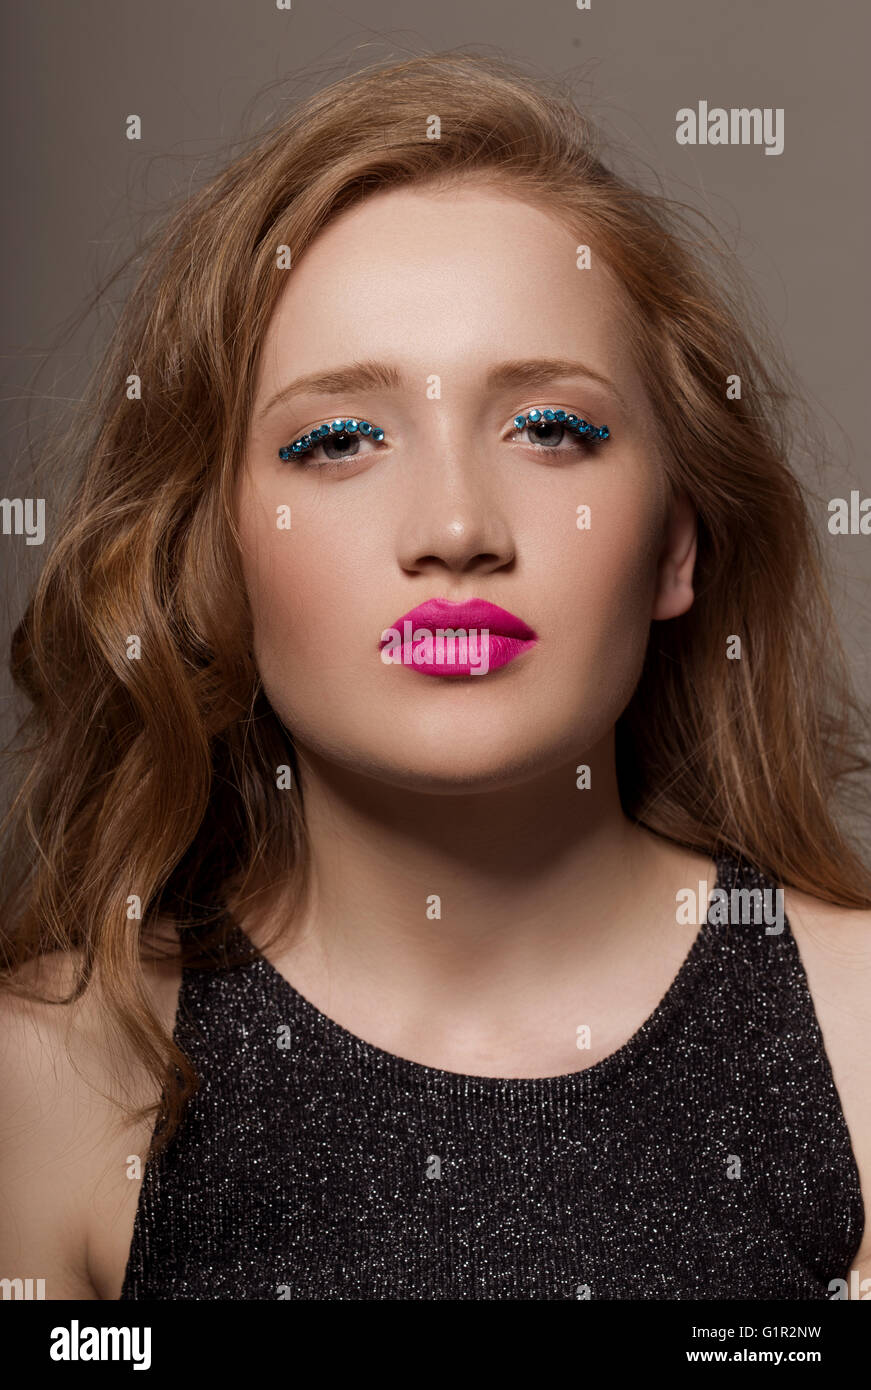 Ritratto di una giovane donna in studio con glittery trucco Foto Stock